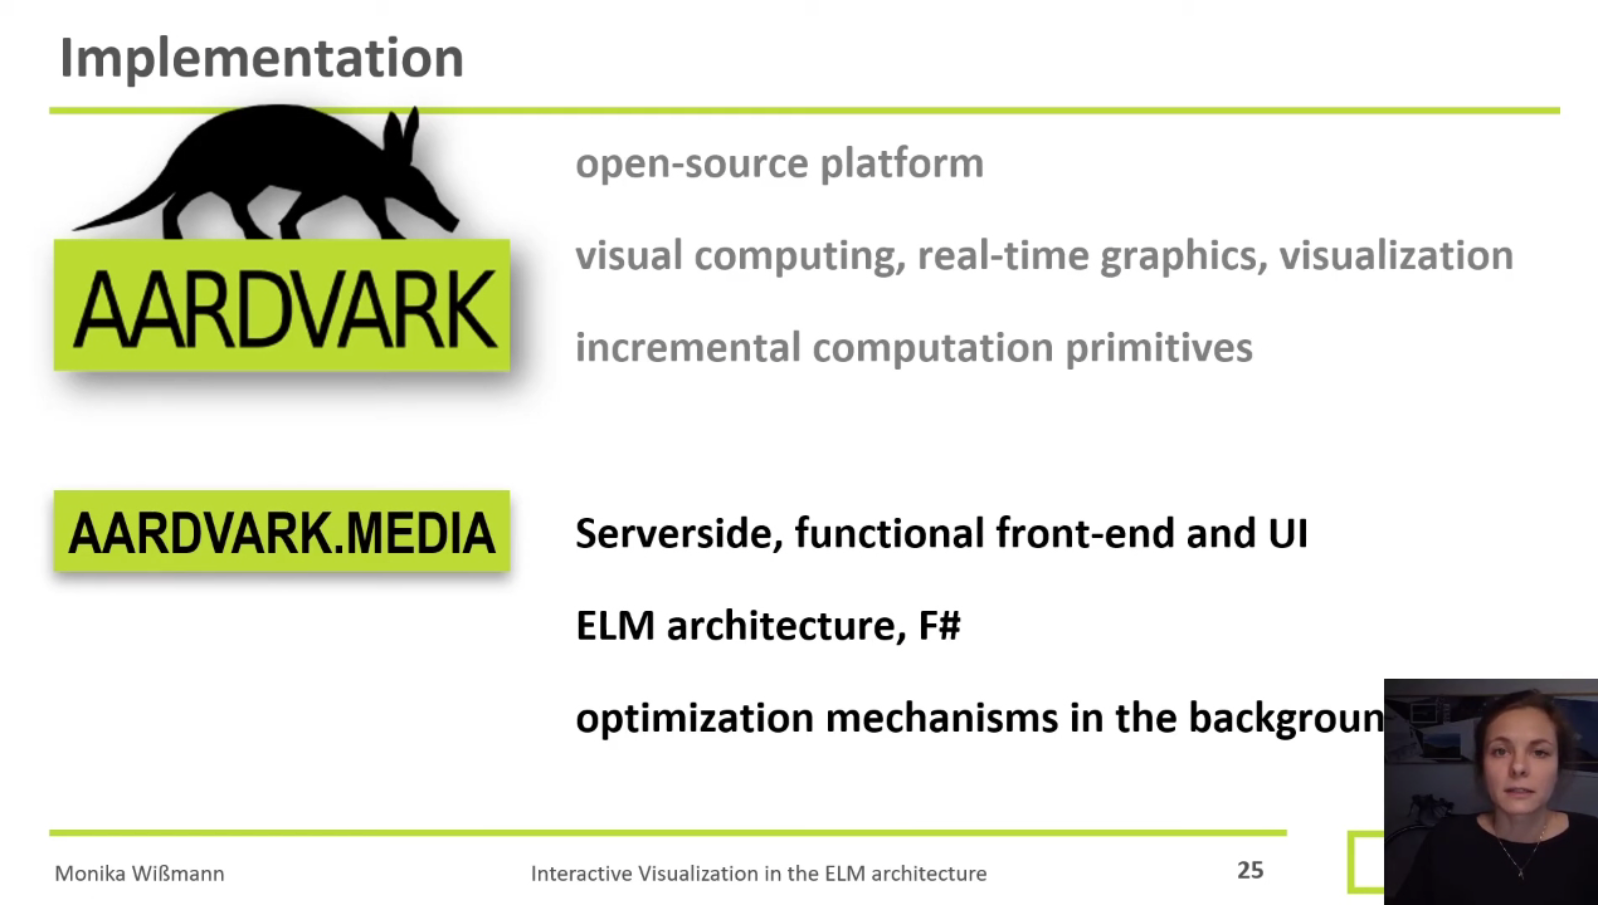 Präsentations-Slide für das Paper "Exploration of Interactive Visualization in the ELM Architekture" von FEMtech-Praktikantin Monika Wißmann.